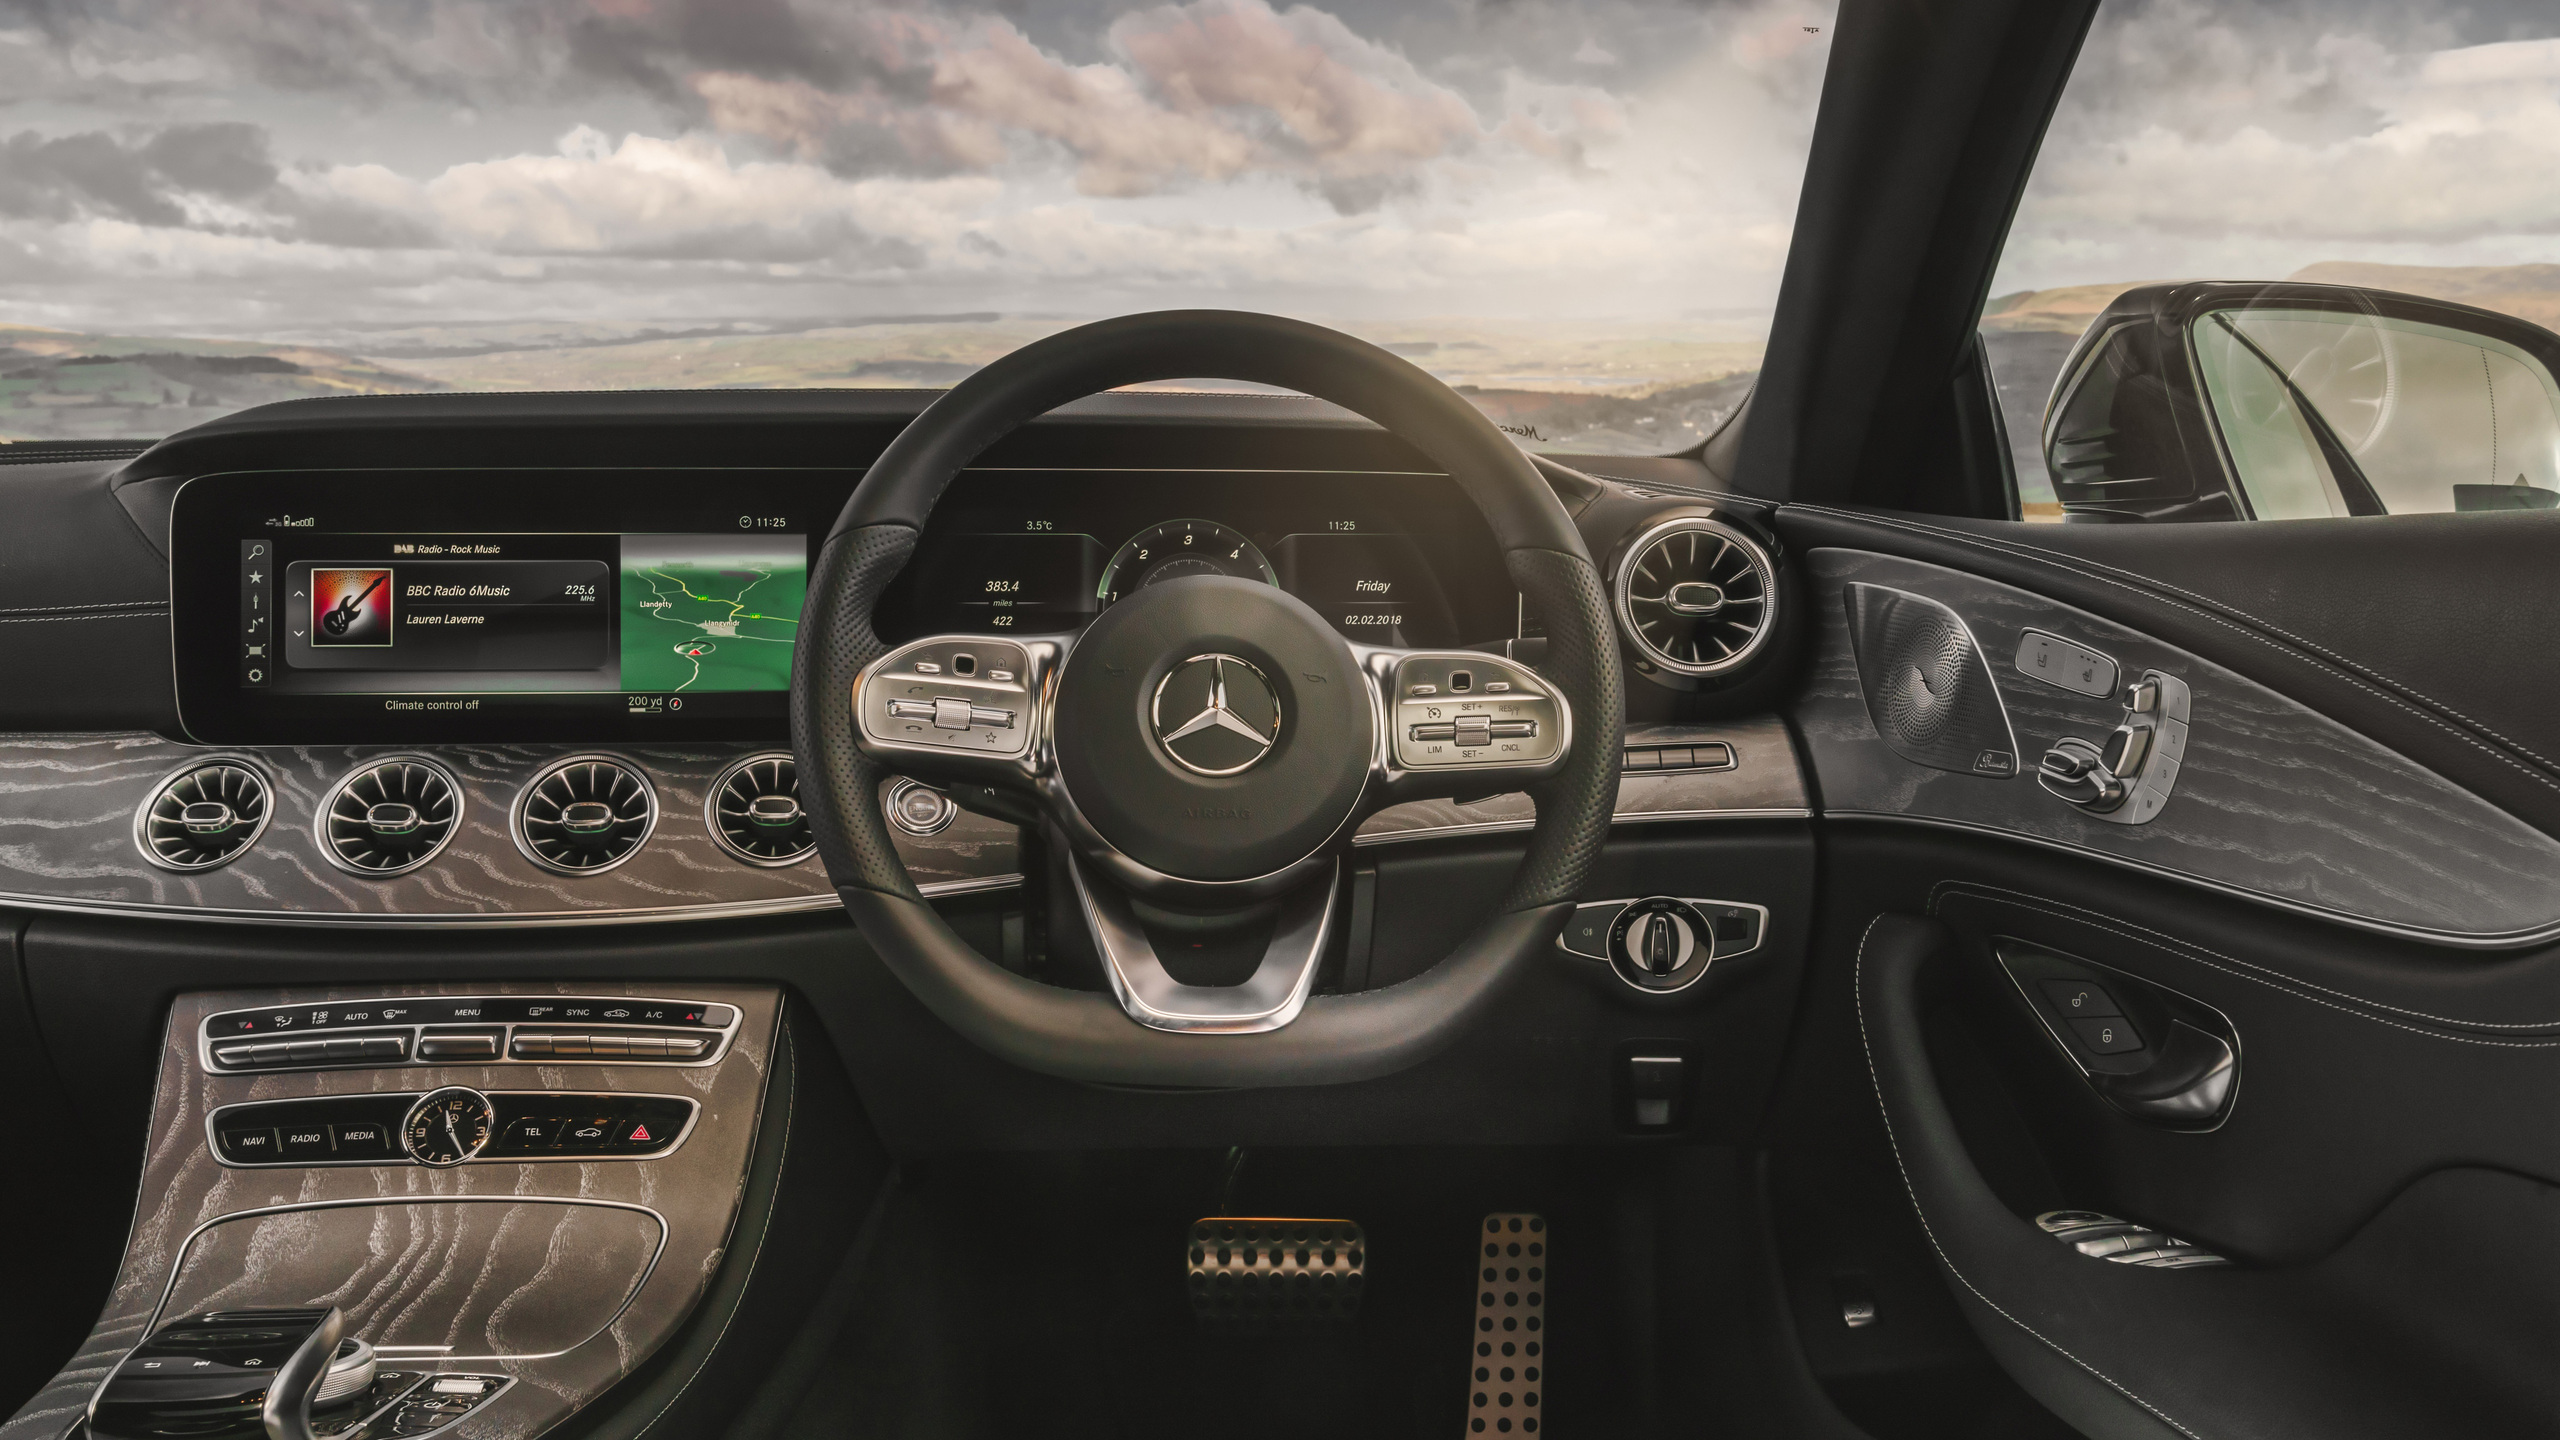 2560x1440 Mercedes Benz Cls 400 D Amg Interior 1440p